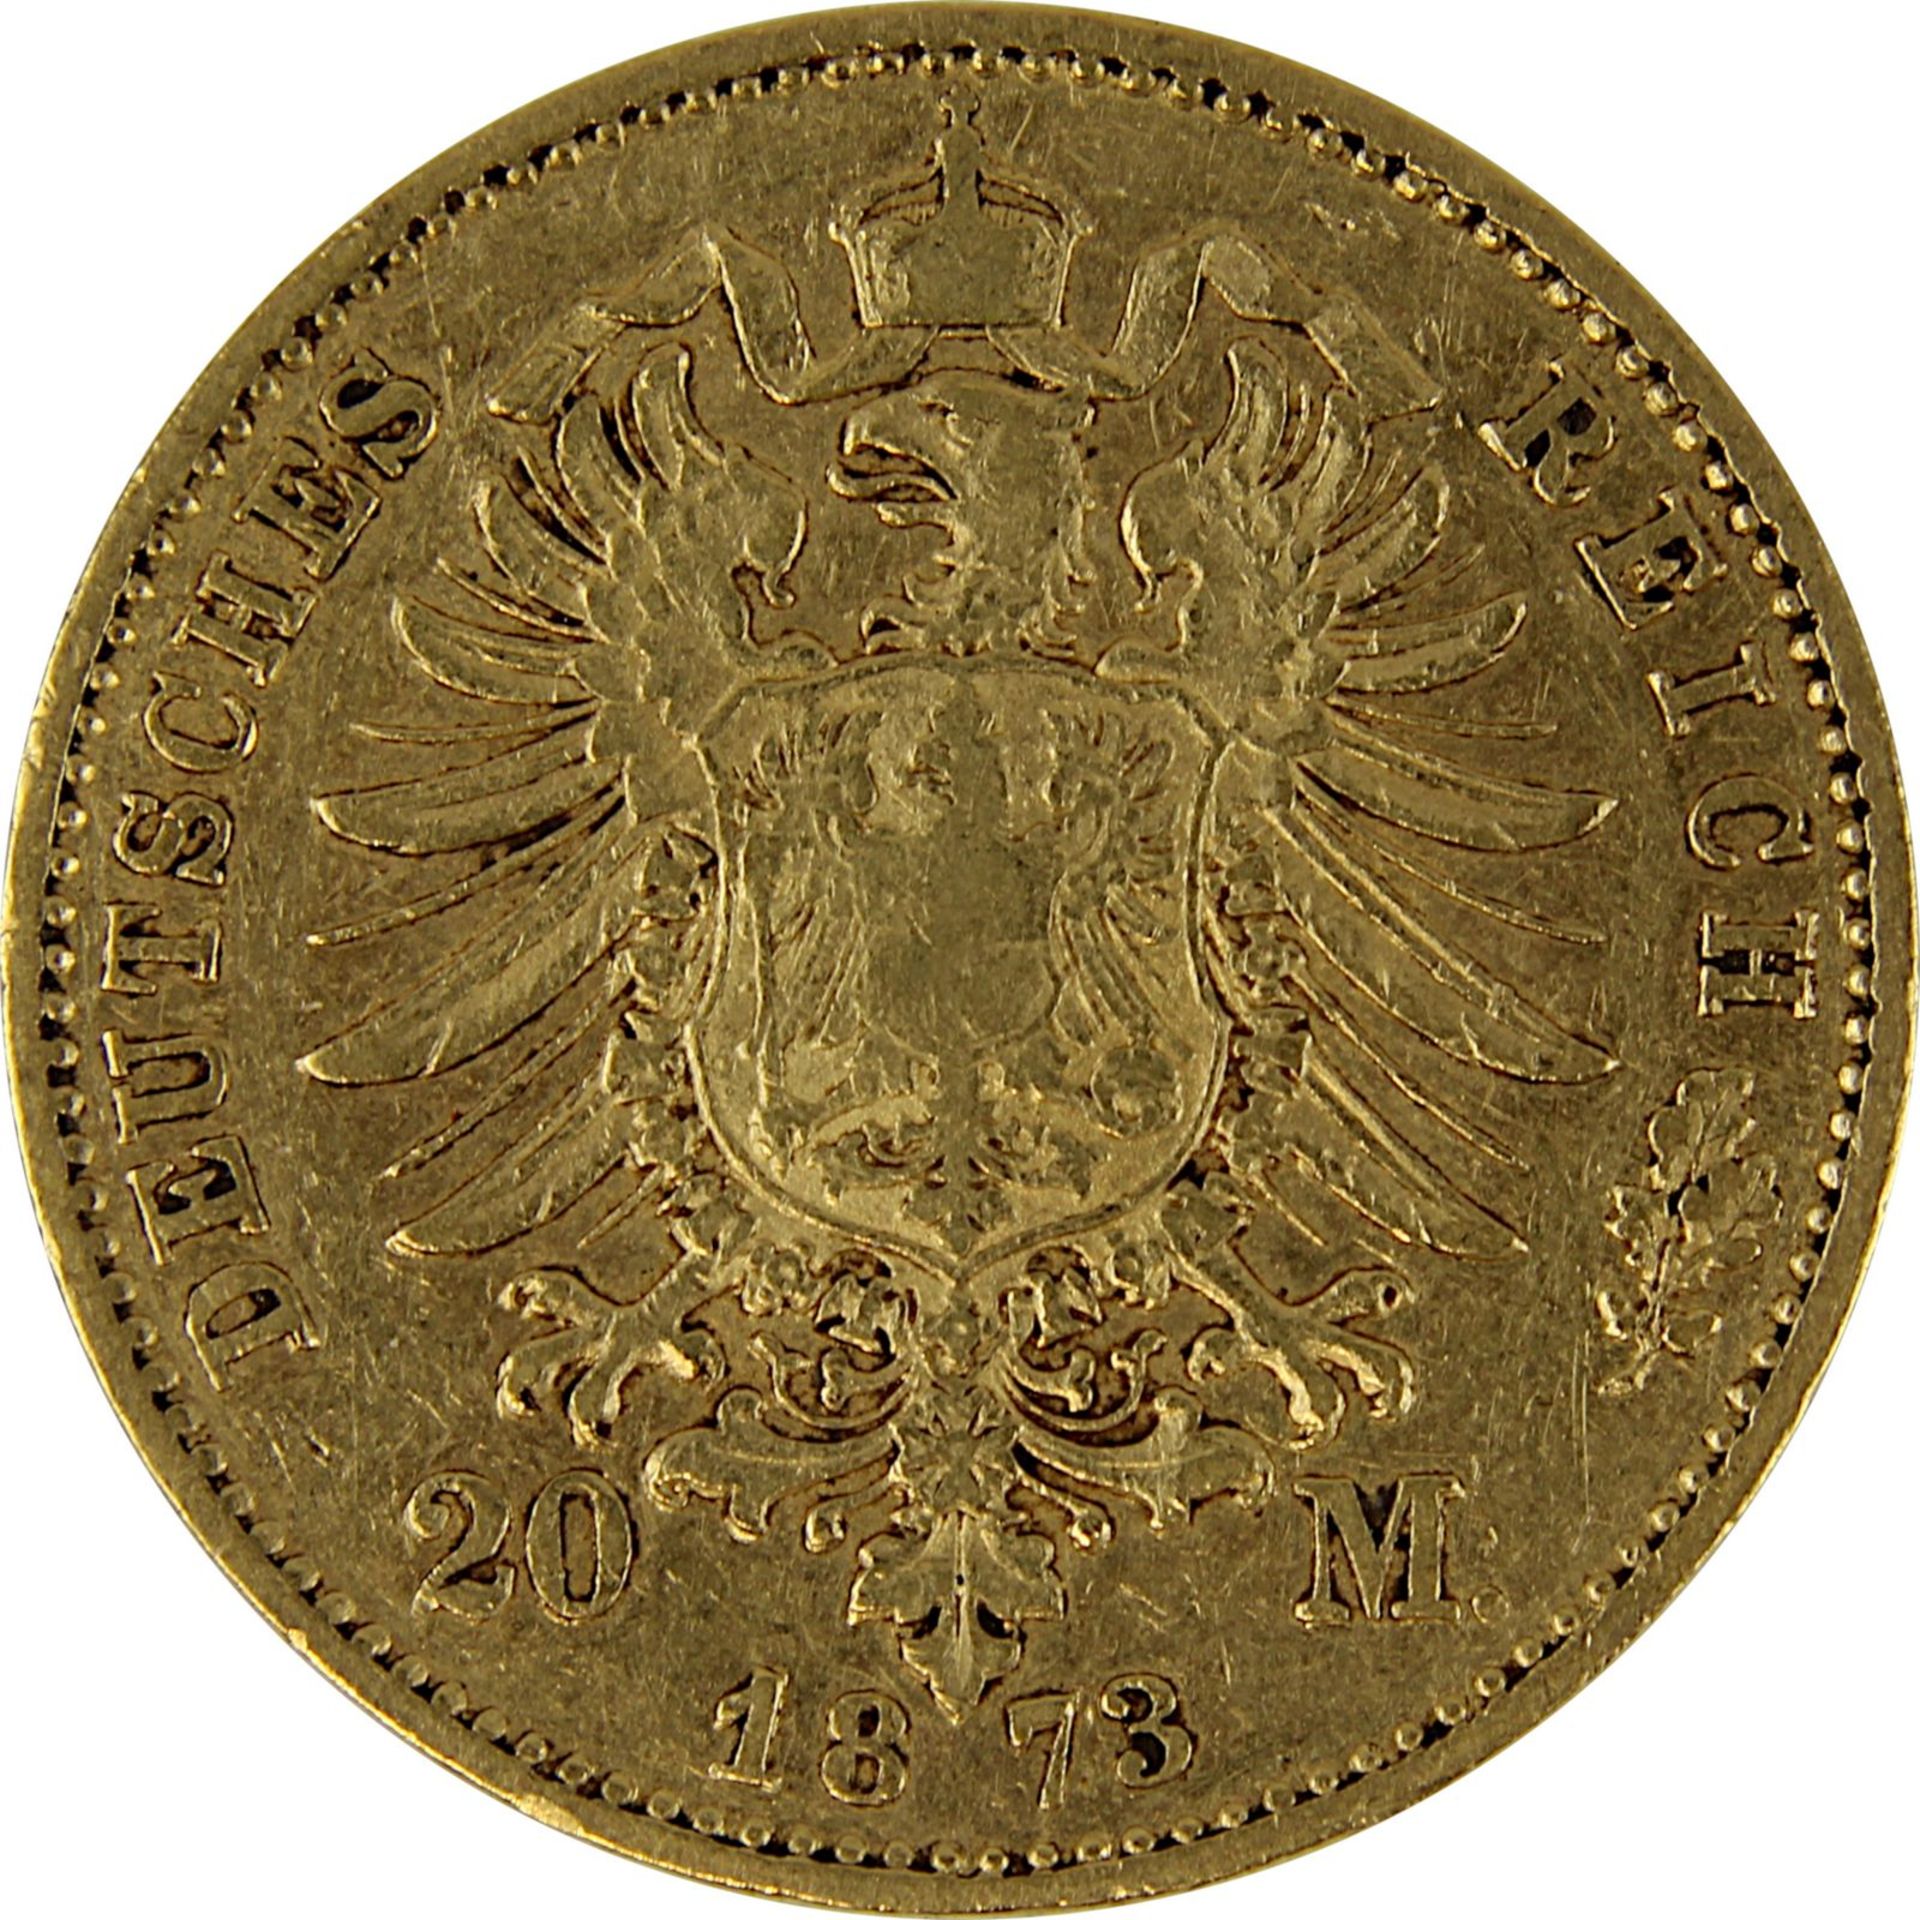 Goldmünze zu 20 Mark, Bayern - Deutsches Reich 1873, Avers: Kopf Ludwig II König von Bayern nach re. - Bild 3 aus 3